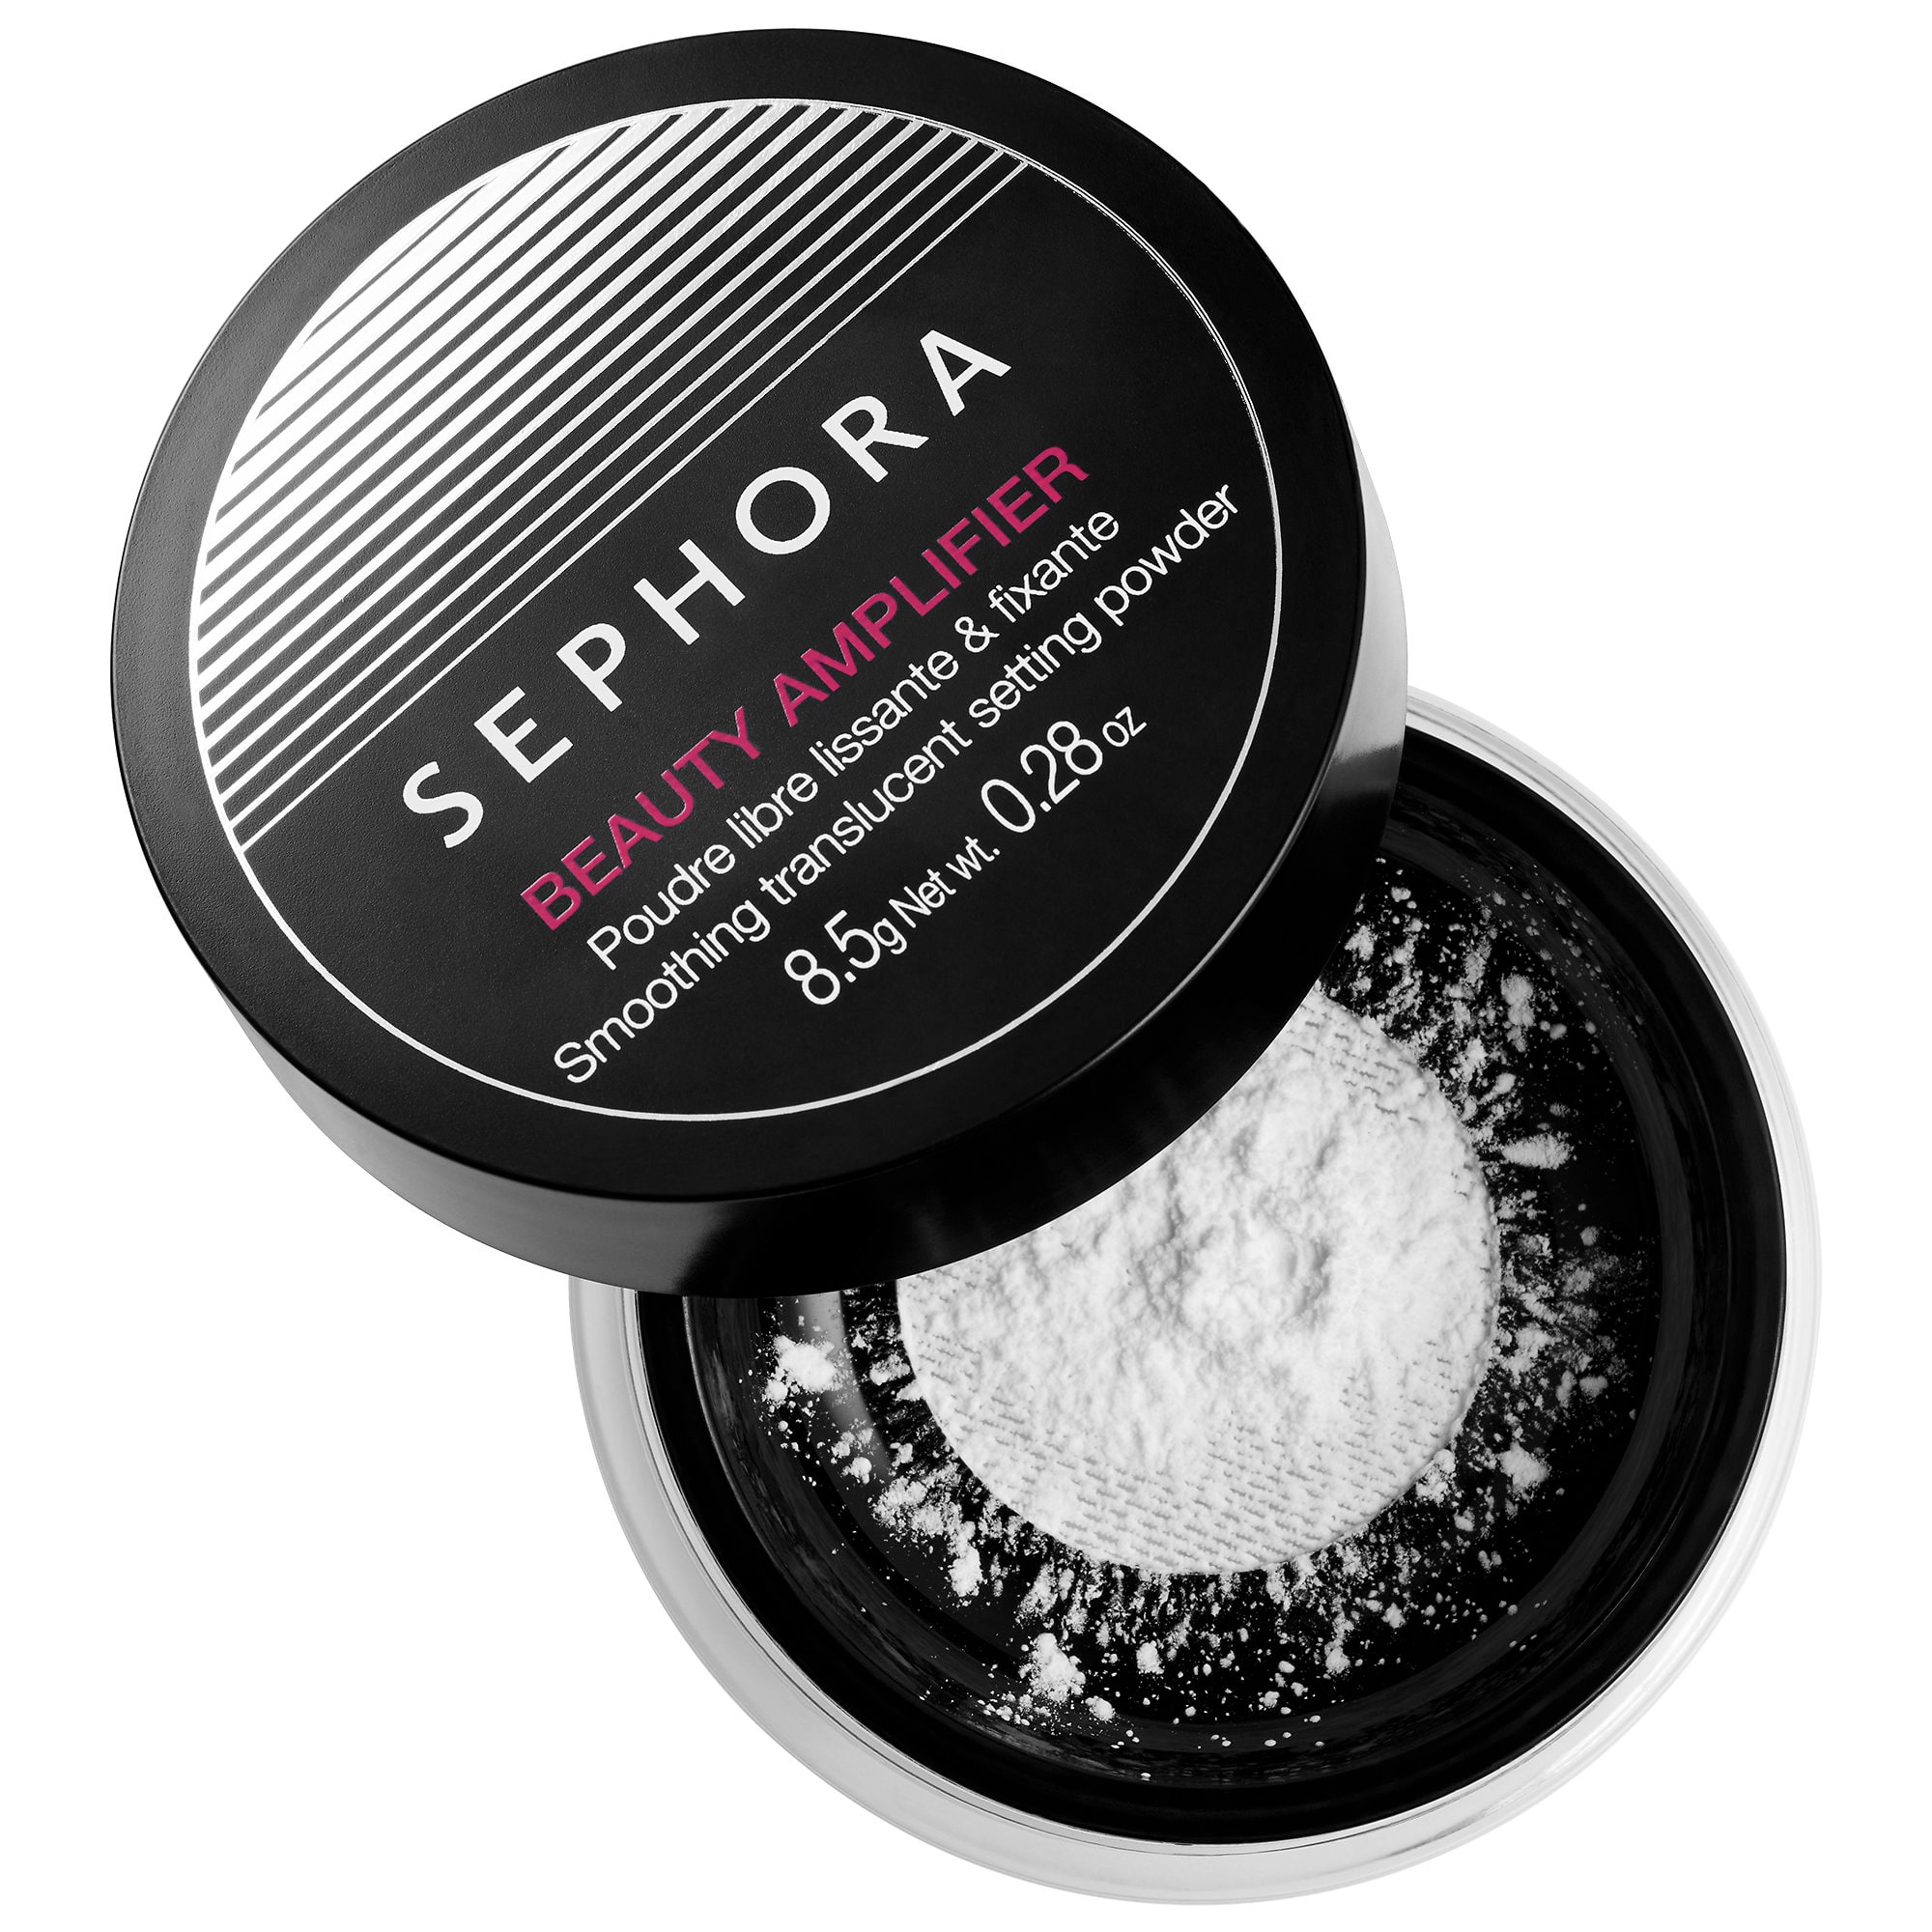 sephora smoothing translucent setting powder